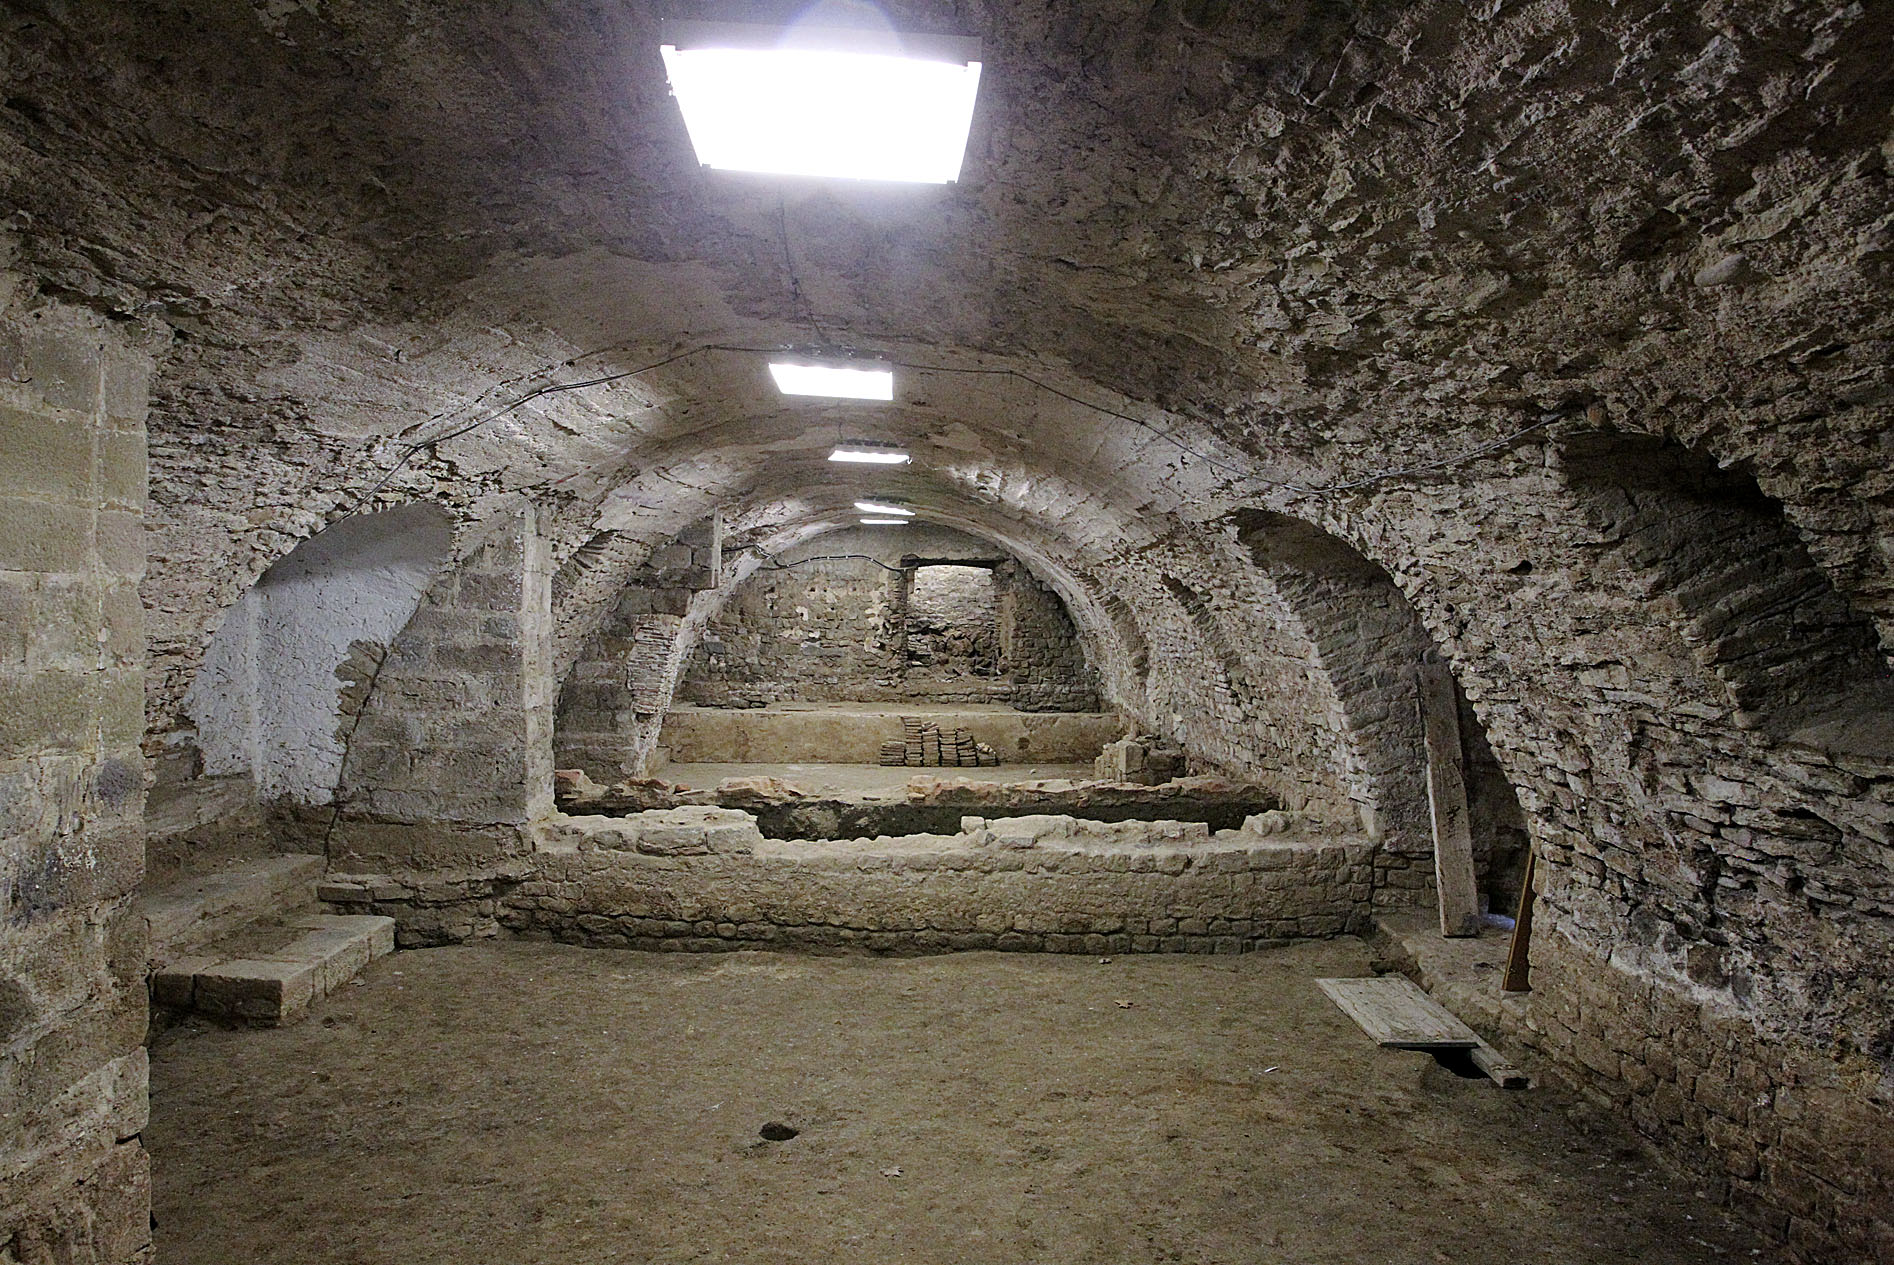 Aspecte de la sala romànica de la Canonja, després dels treballs d'excavació